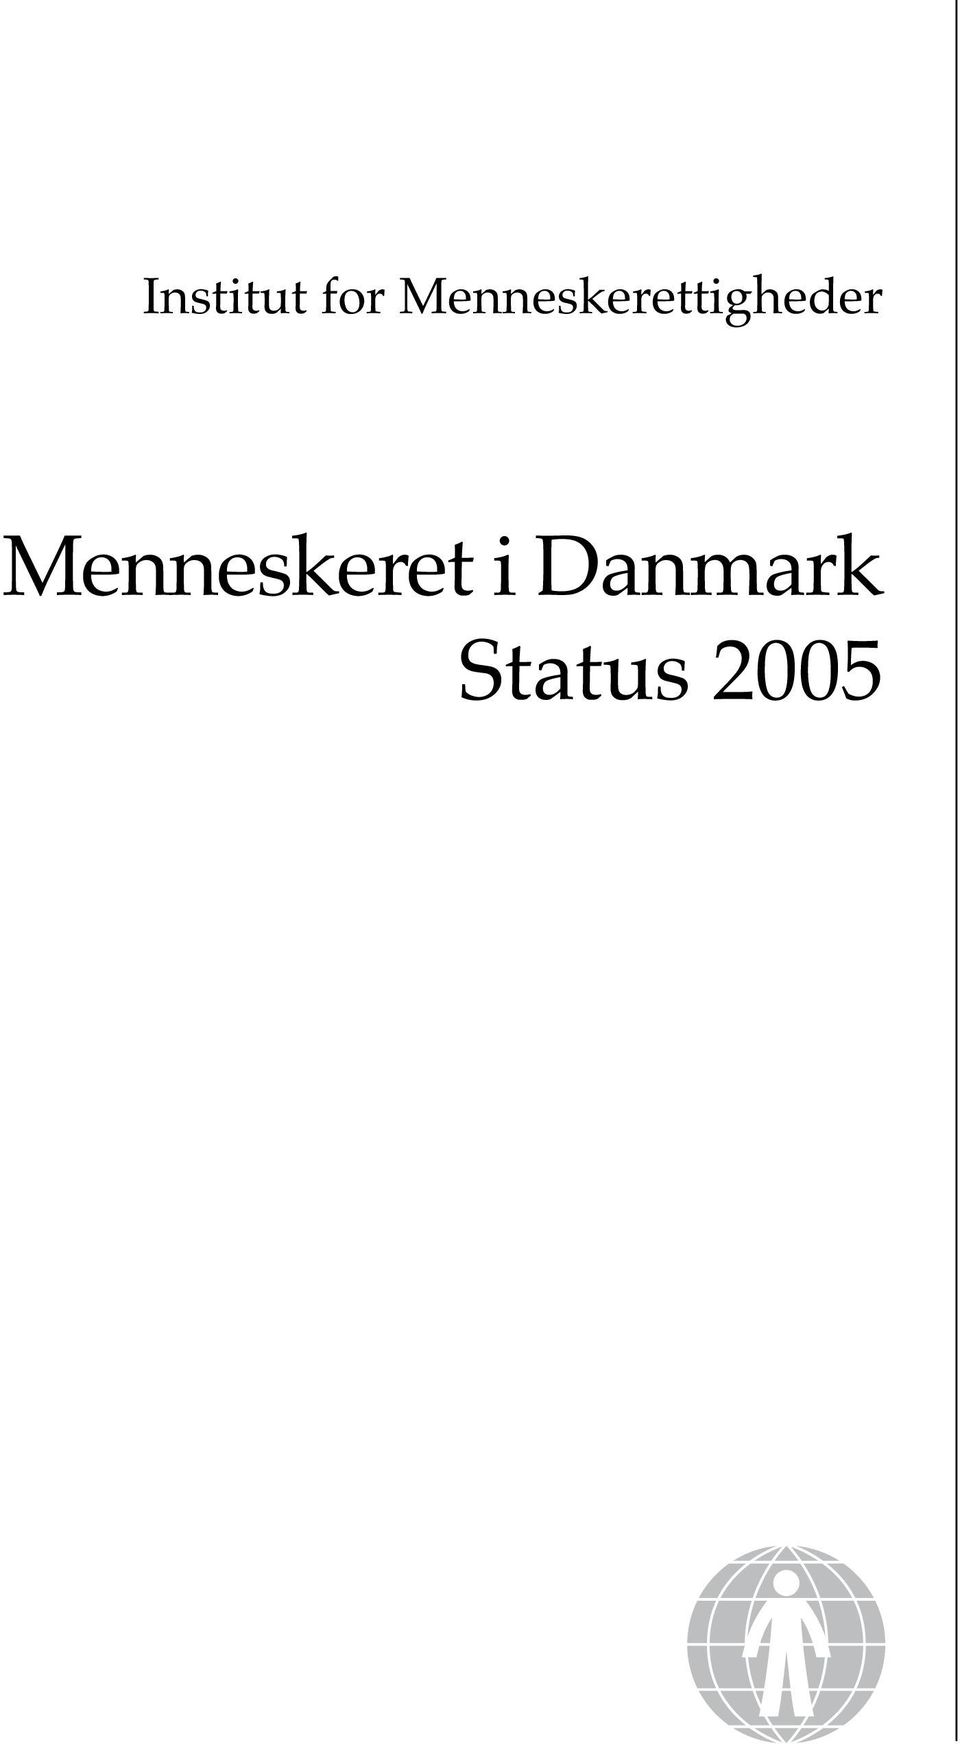 Menneskeret i Danmark